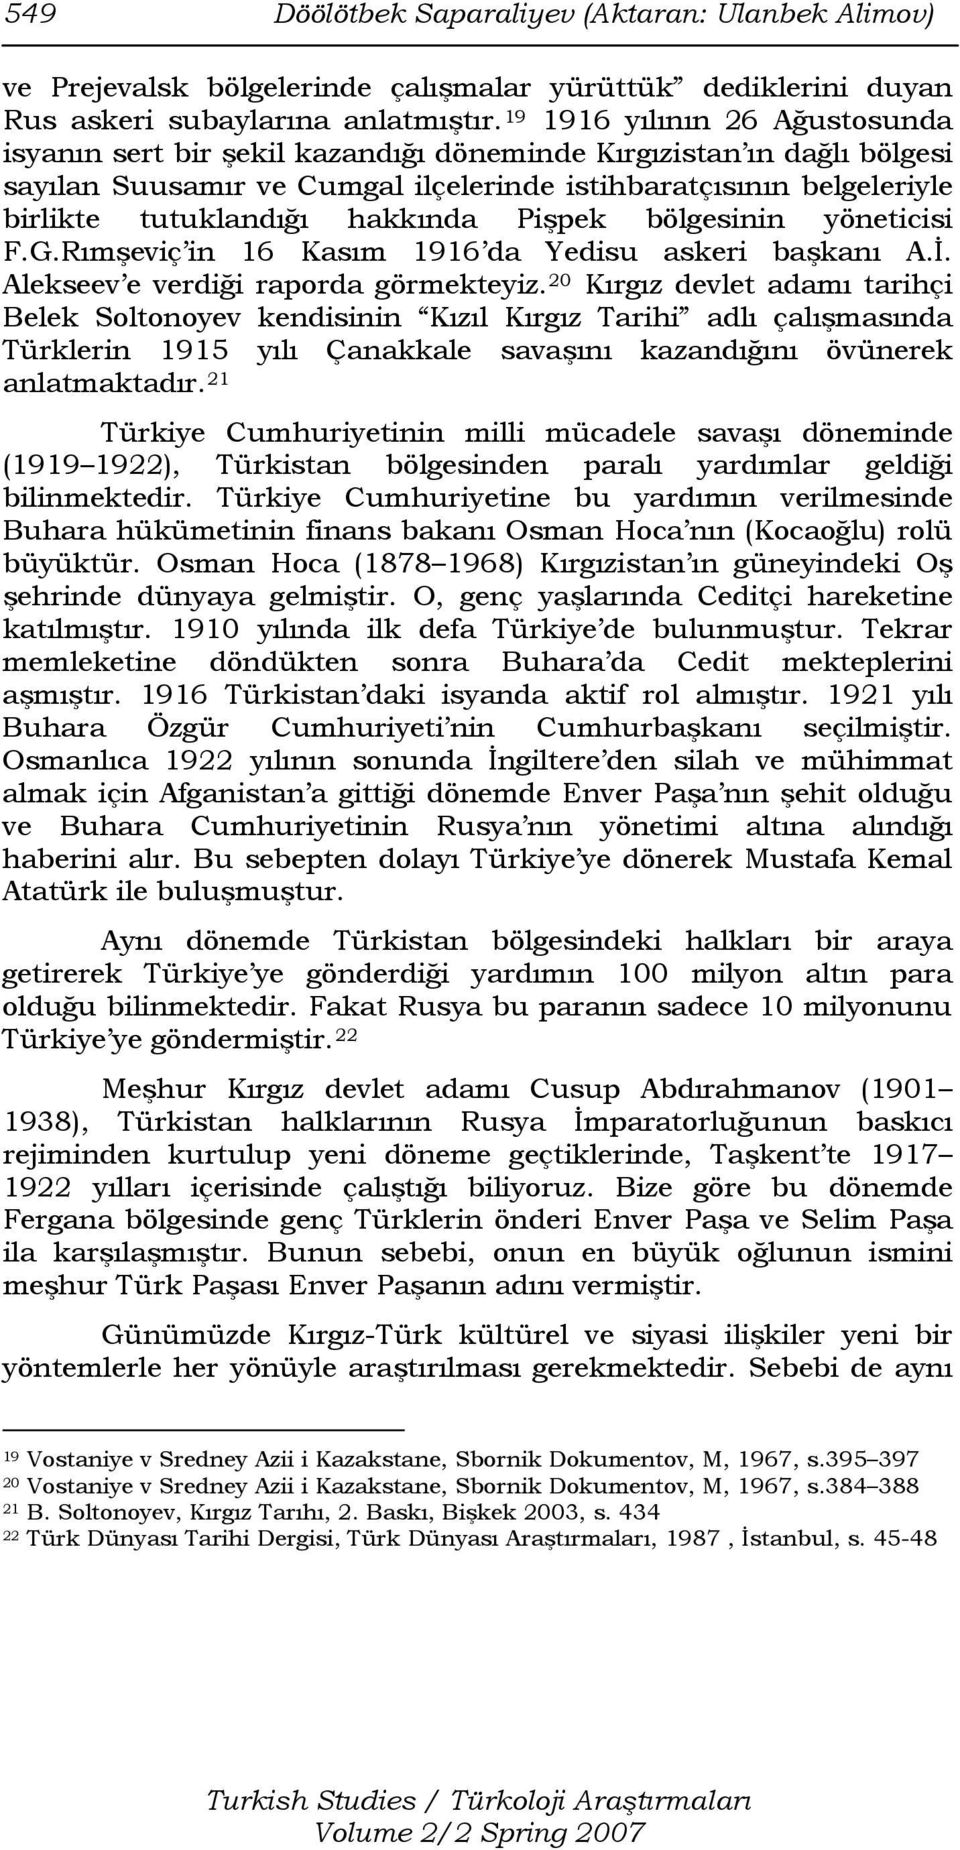 hakkında Pişpek bölgesinin yöneticisi F.G.Rımşeviç in 16 Kasım 1916 da Yedisu askeri başkanı A.İ. Alekseev e verdiği raporda görmekteyiz.